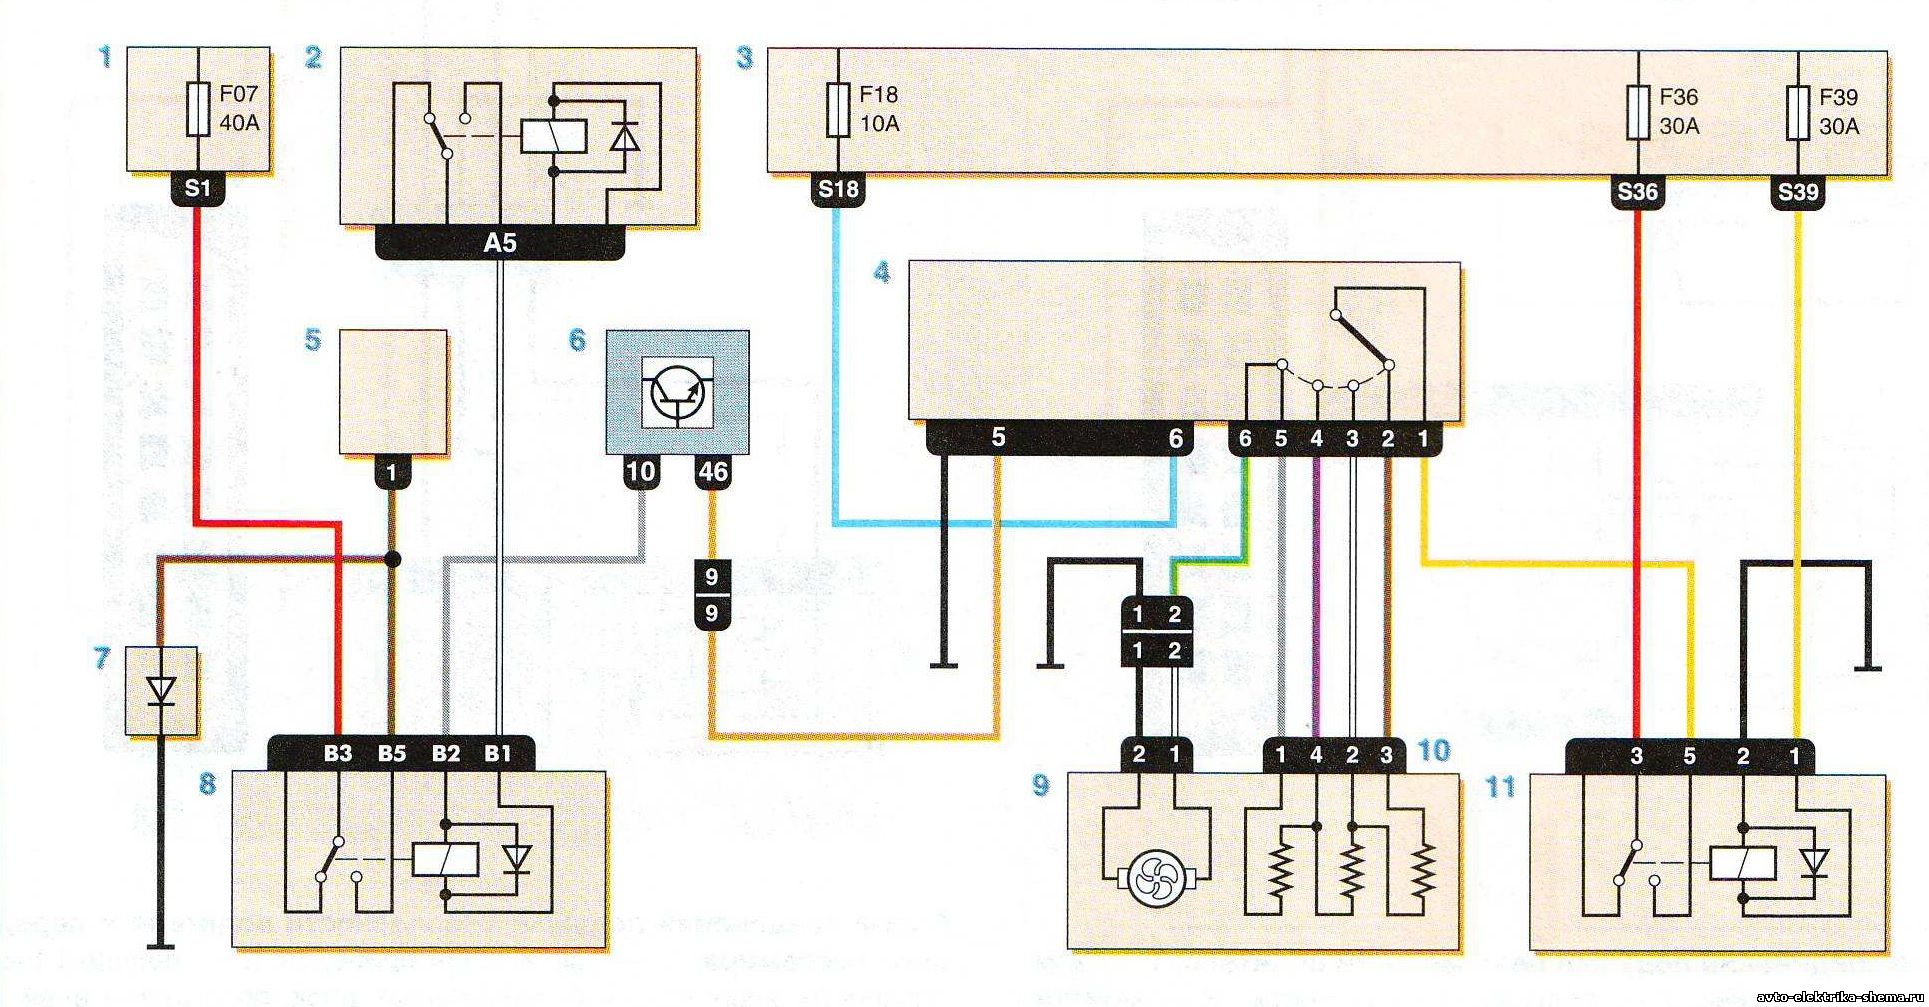 Ремонт Renault Logan : Схема 14. Электровентилятор системы отопления (кондиционирования) и вентиляции салона: 1 – блок предохранителей в салоне (см. рис. 10.1); 2 – реле 233 (см. рис. 10.2а и 10.2б); 3 – разъем электропроводки моторного отсека/салона (моноблок); 4 – электровент